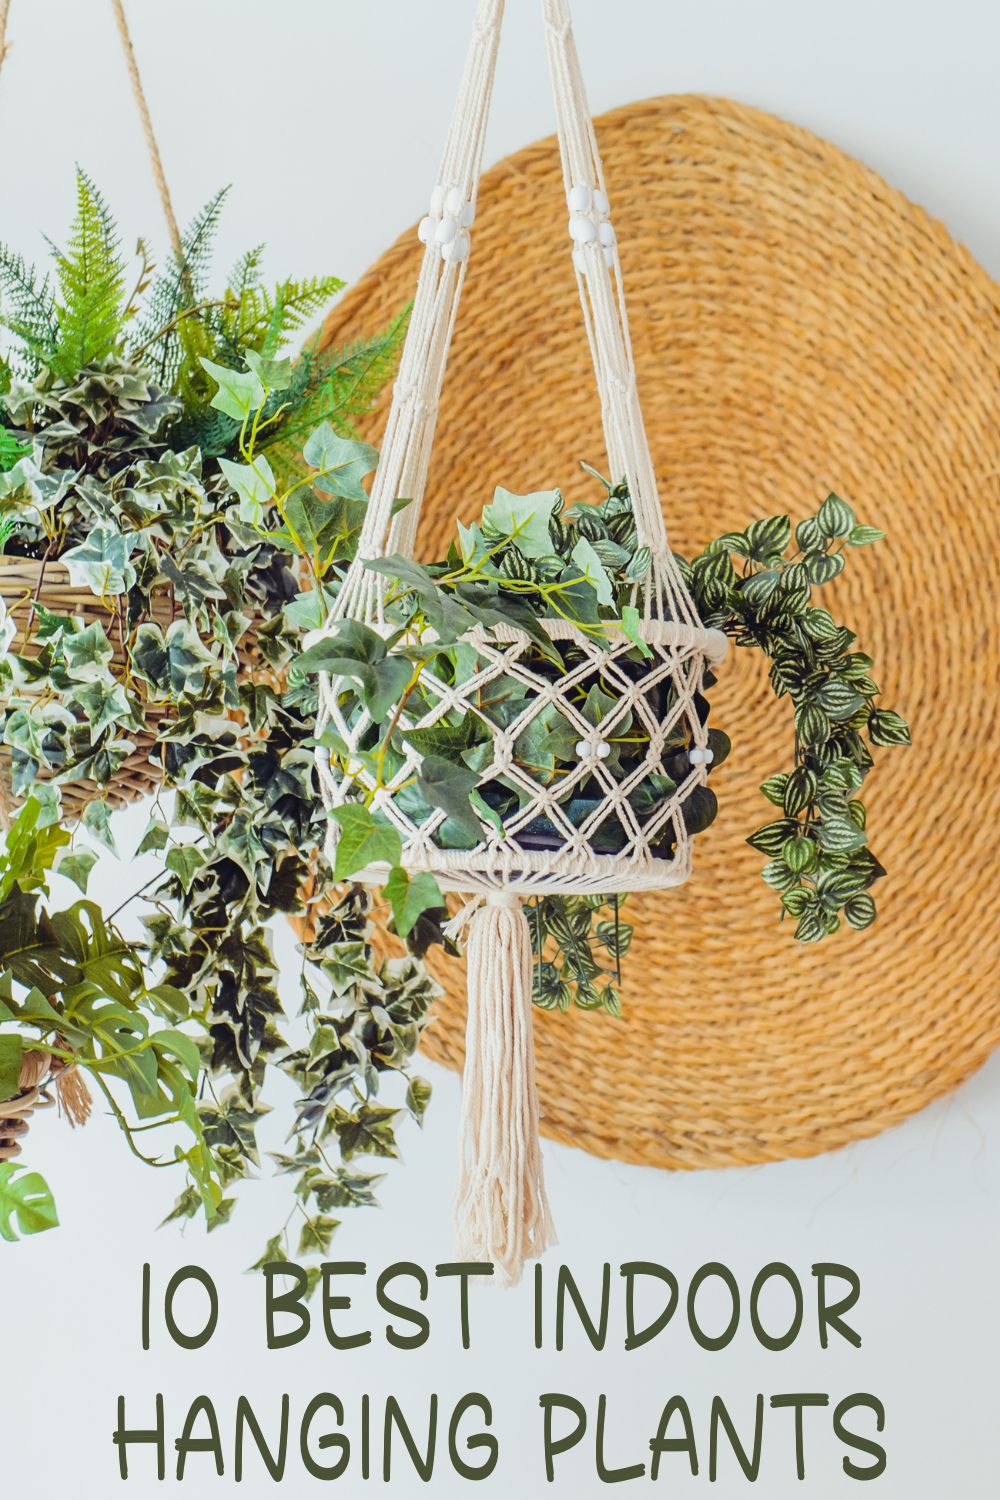 10 Best Indoor Hanging Plants